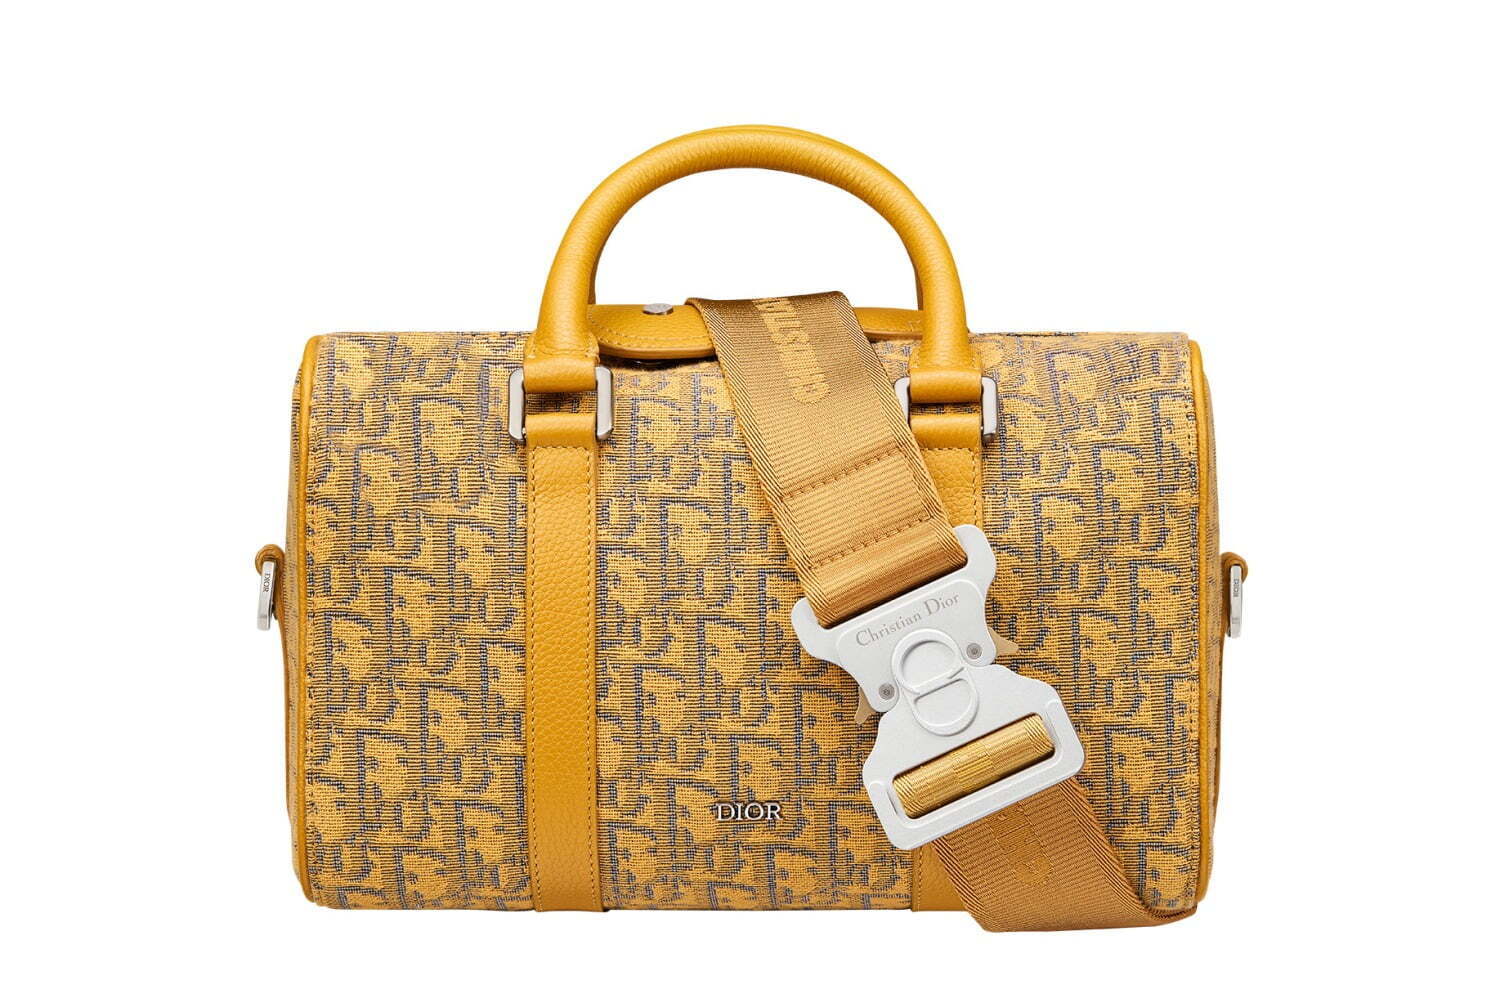 ディオール新メンズバッグ「ディオール ランゴ」トラベルバッグに着想、ゴールドカラーのオブリーク柄 ファッションプレス